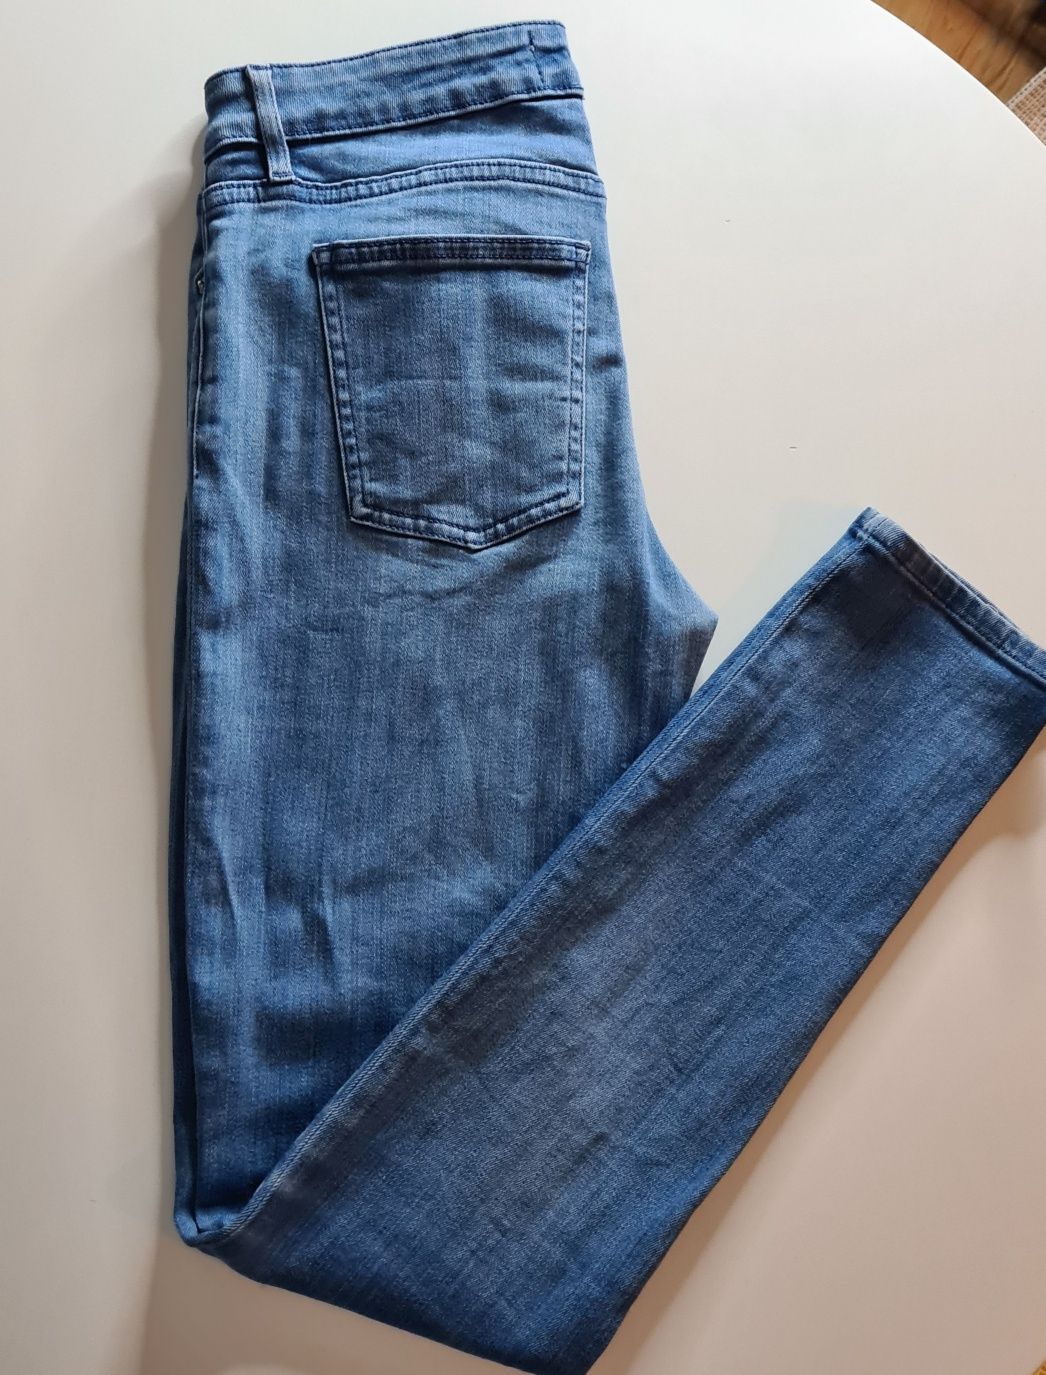 Acne Studios damskie jeansy 29x34 skinny rurki s